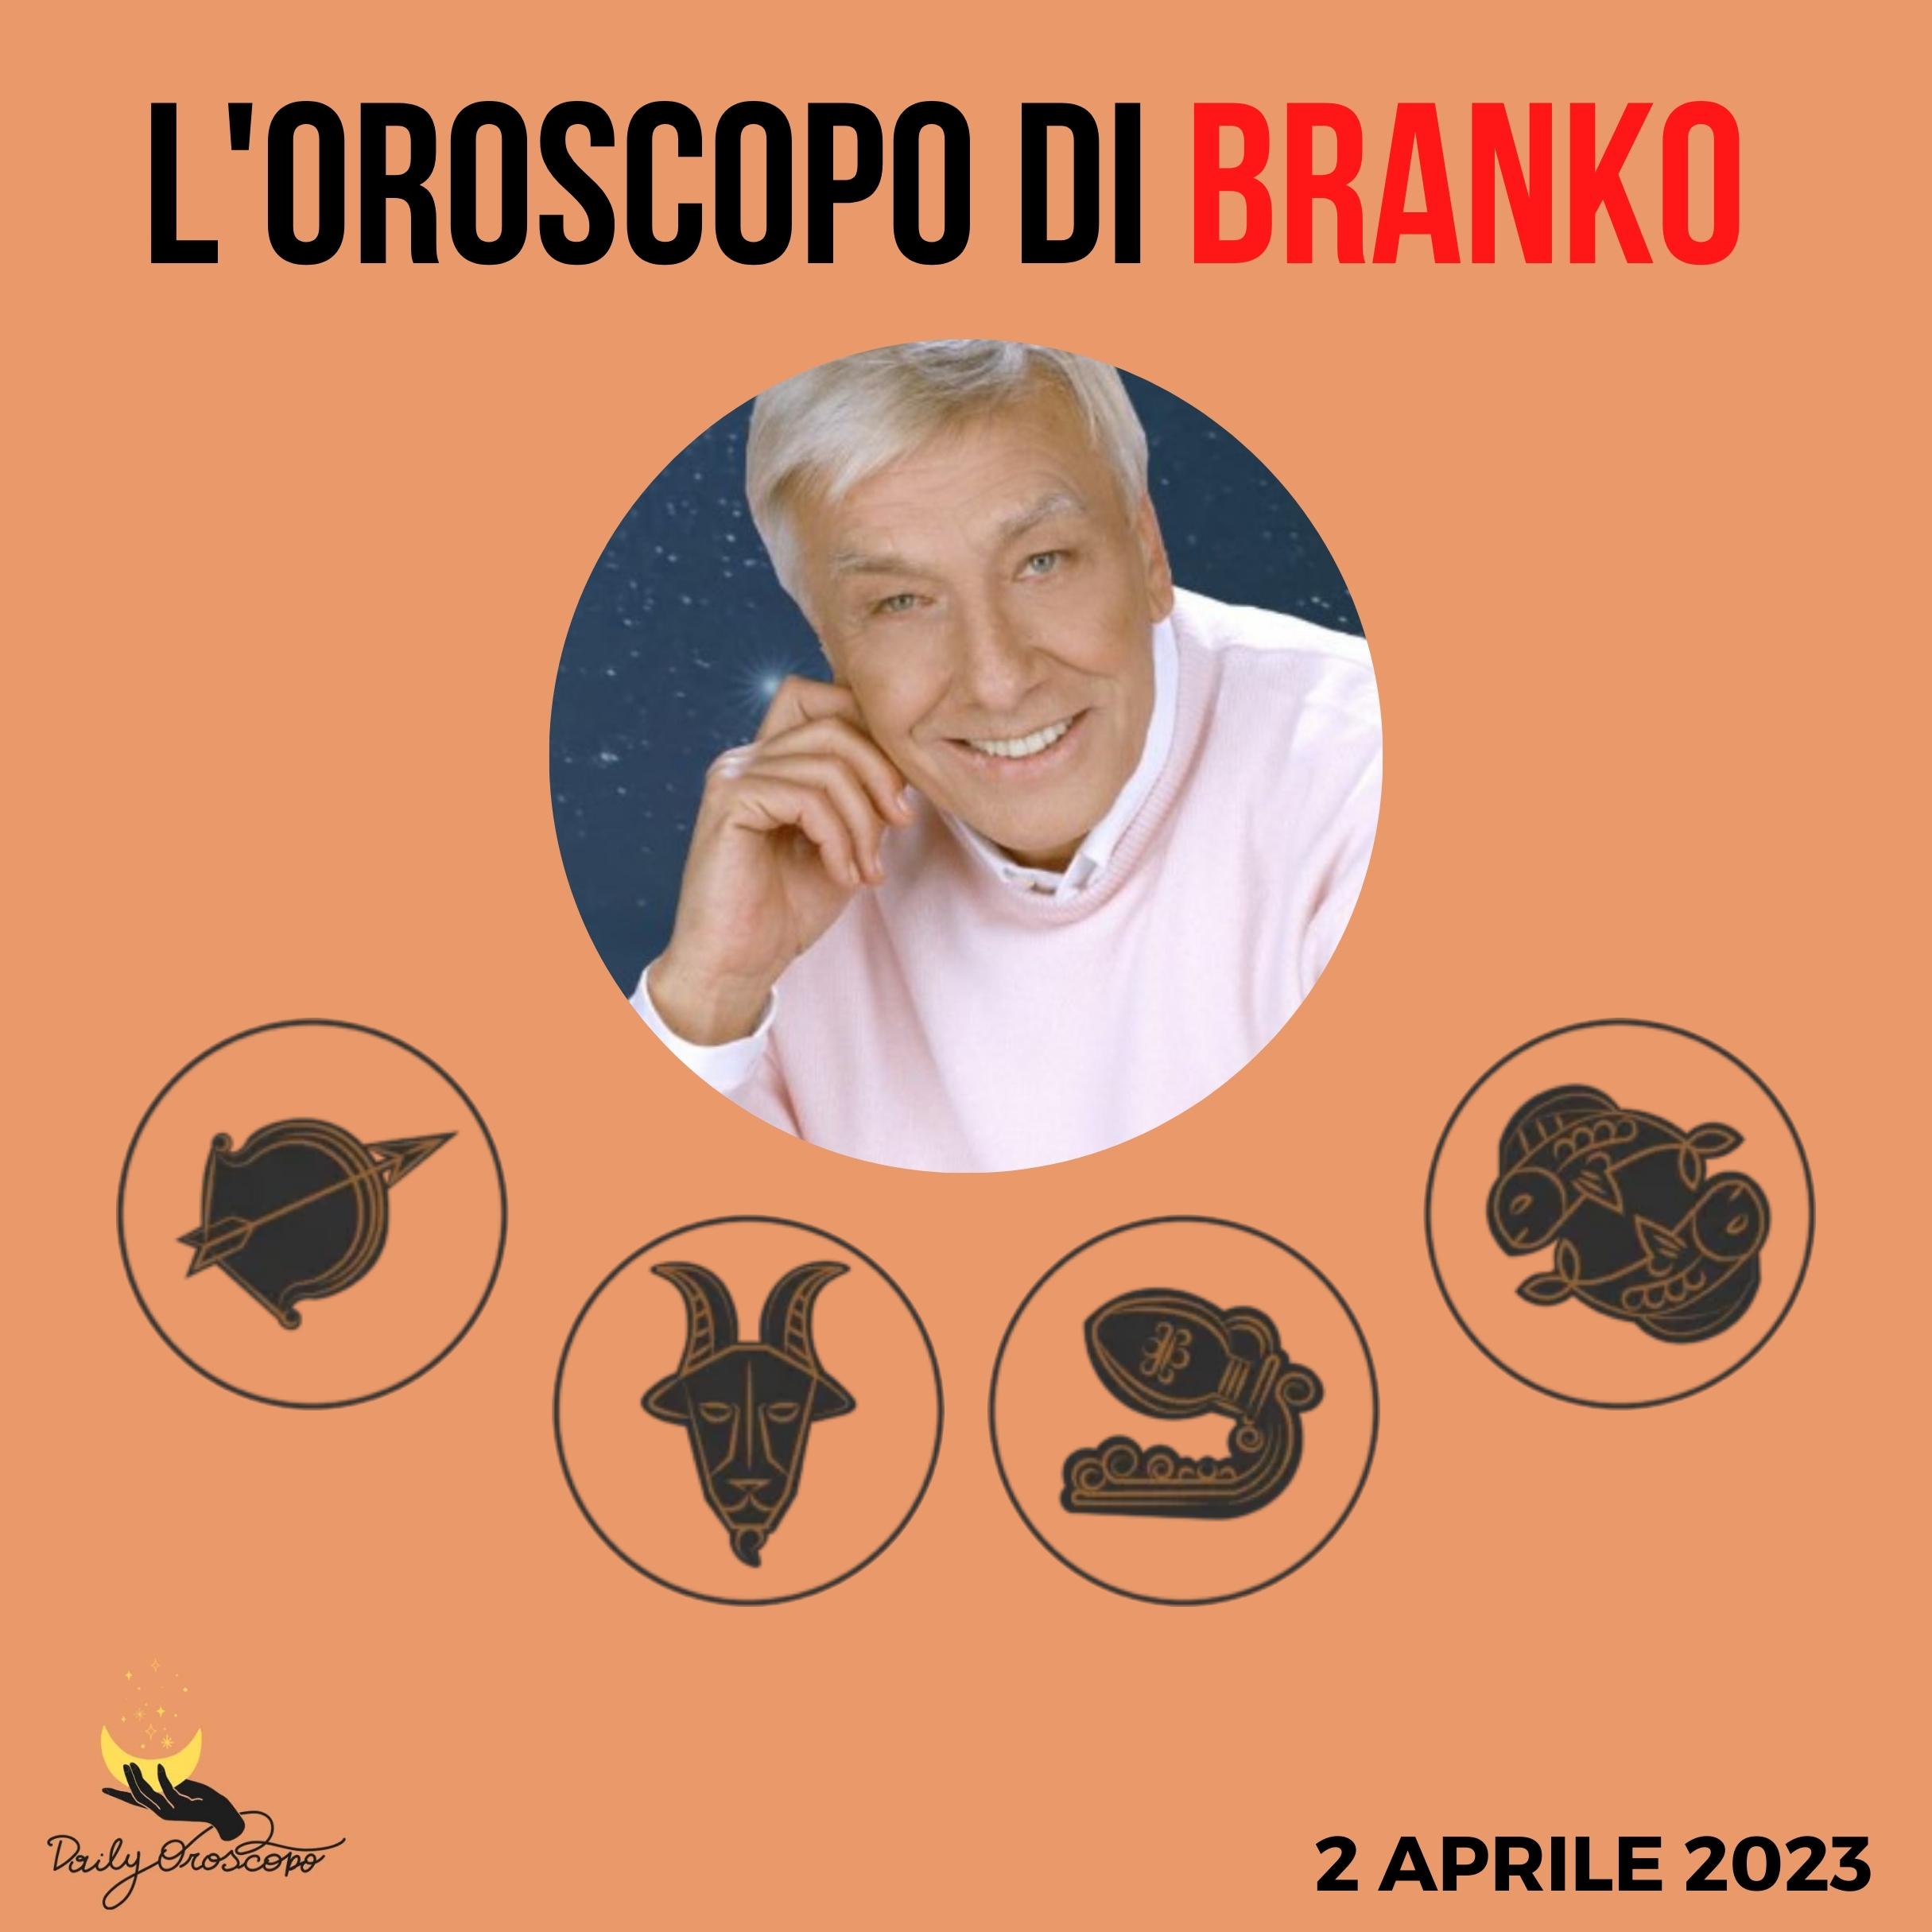 Oroscopo Branko 2 aprile 2023 Sagittario Capricorno Acquario Pesci